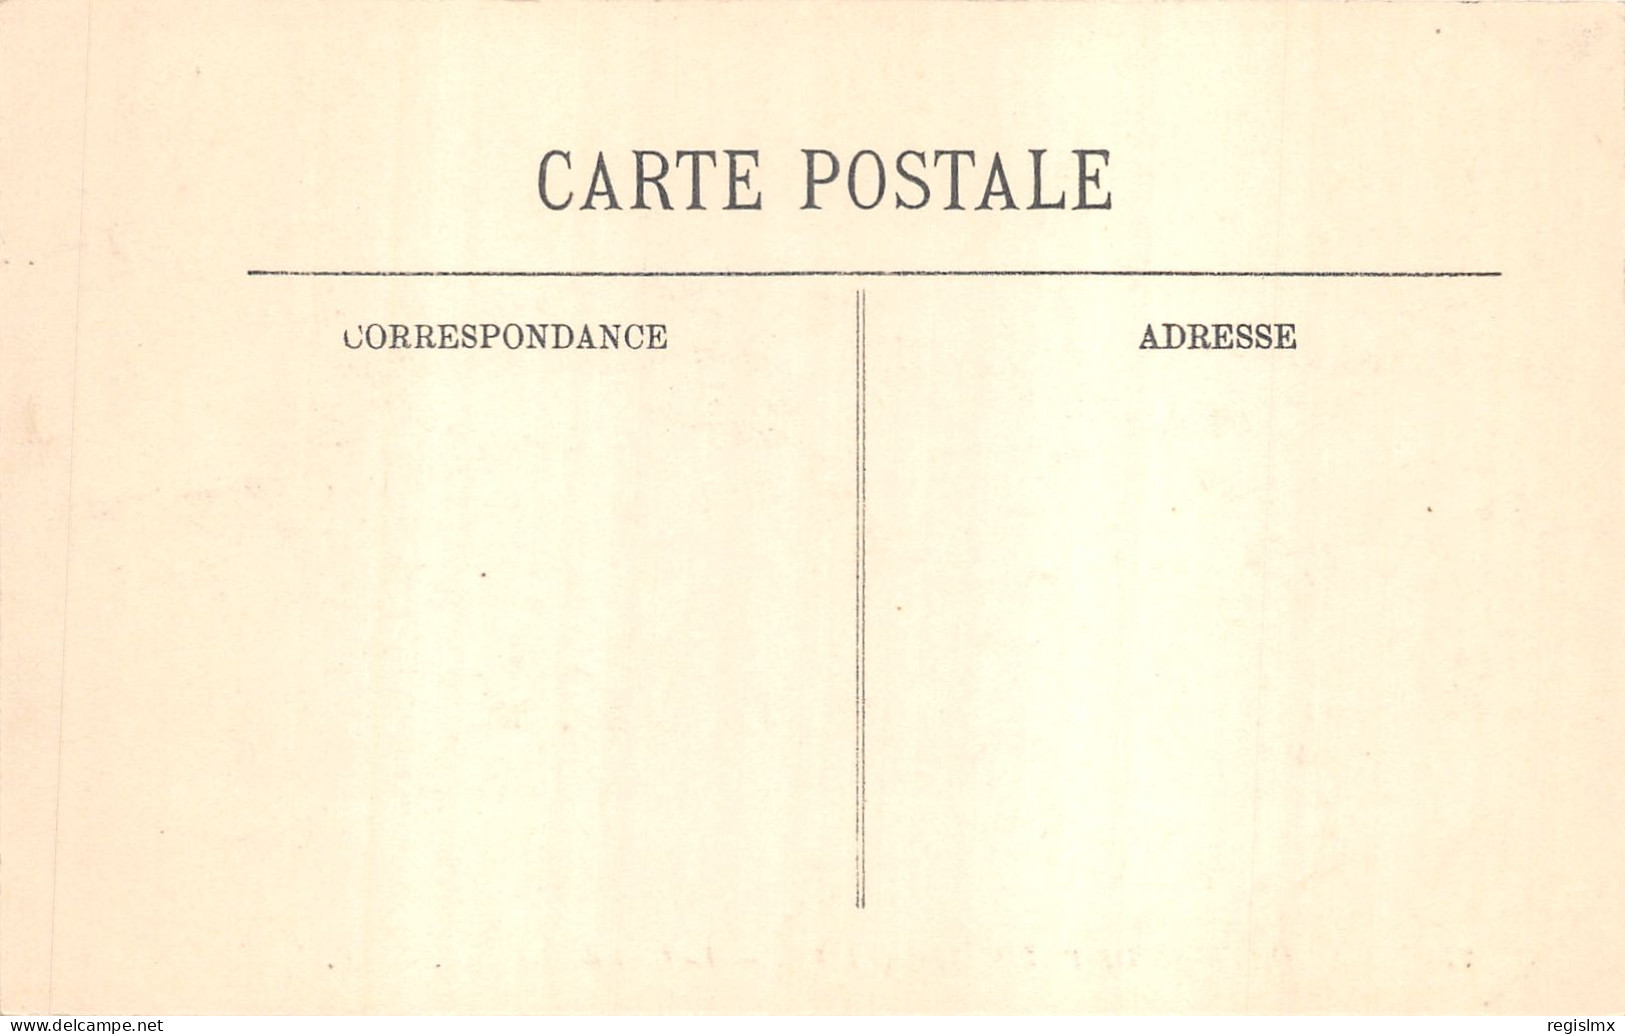 75-PARIS-CRUE DE LA SEINE-N°T2408-A/0263 - Überschwemmung 1910